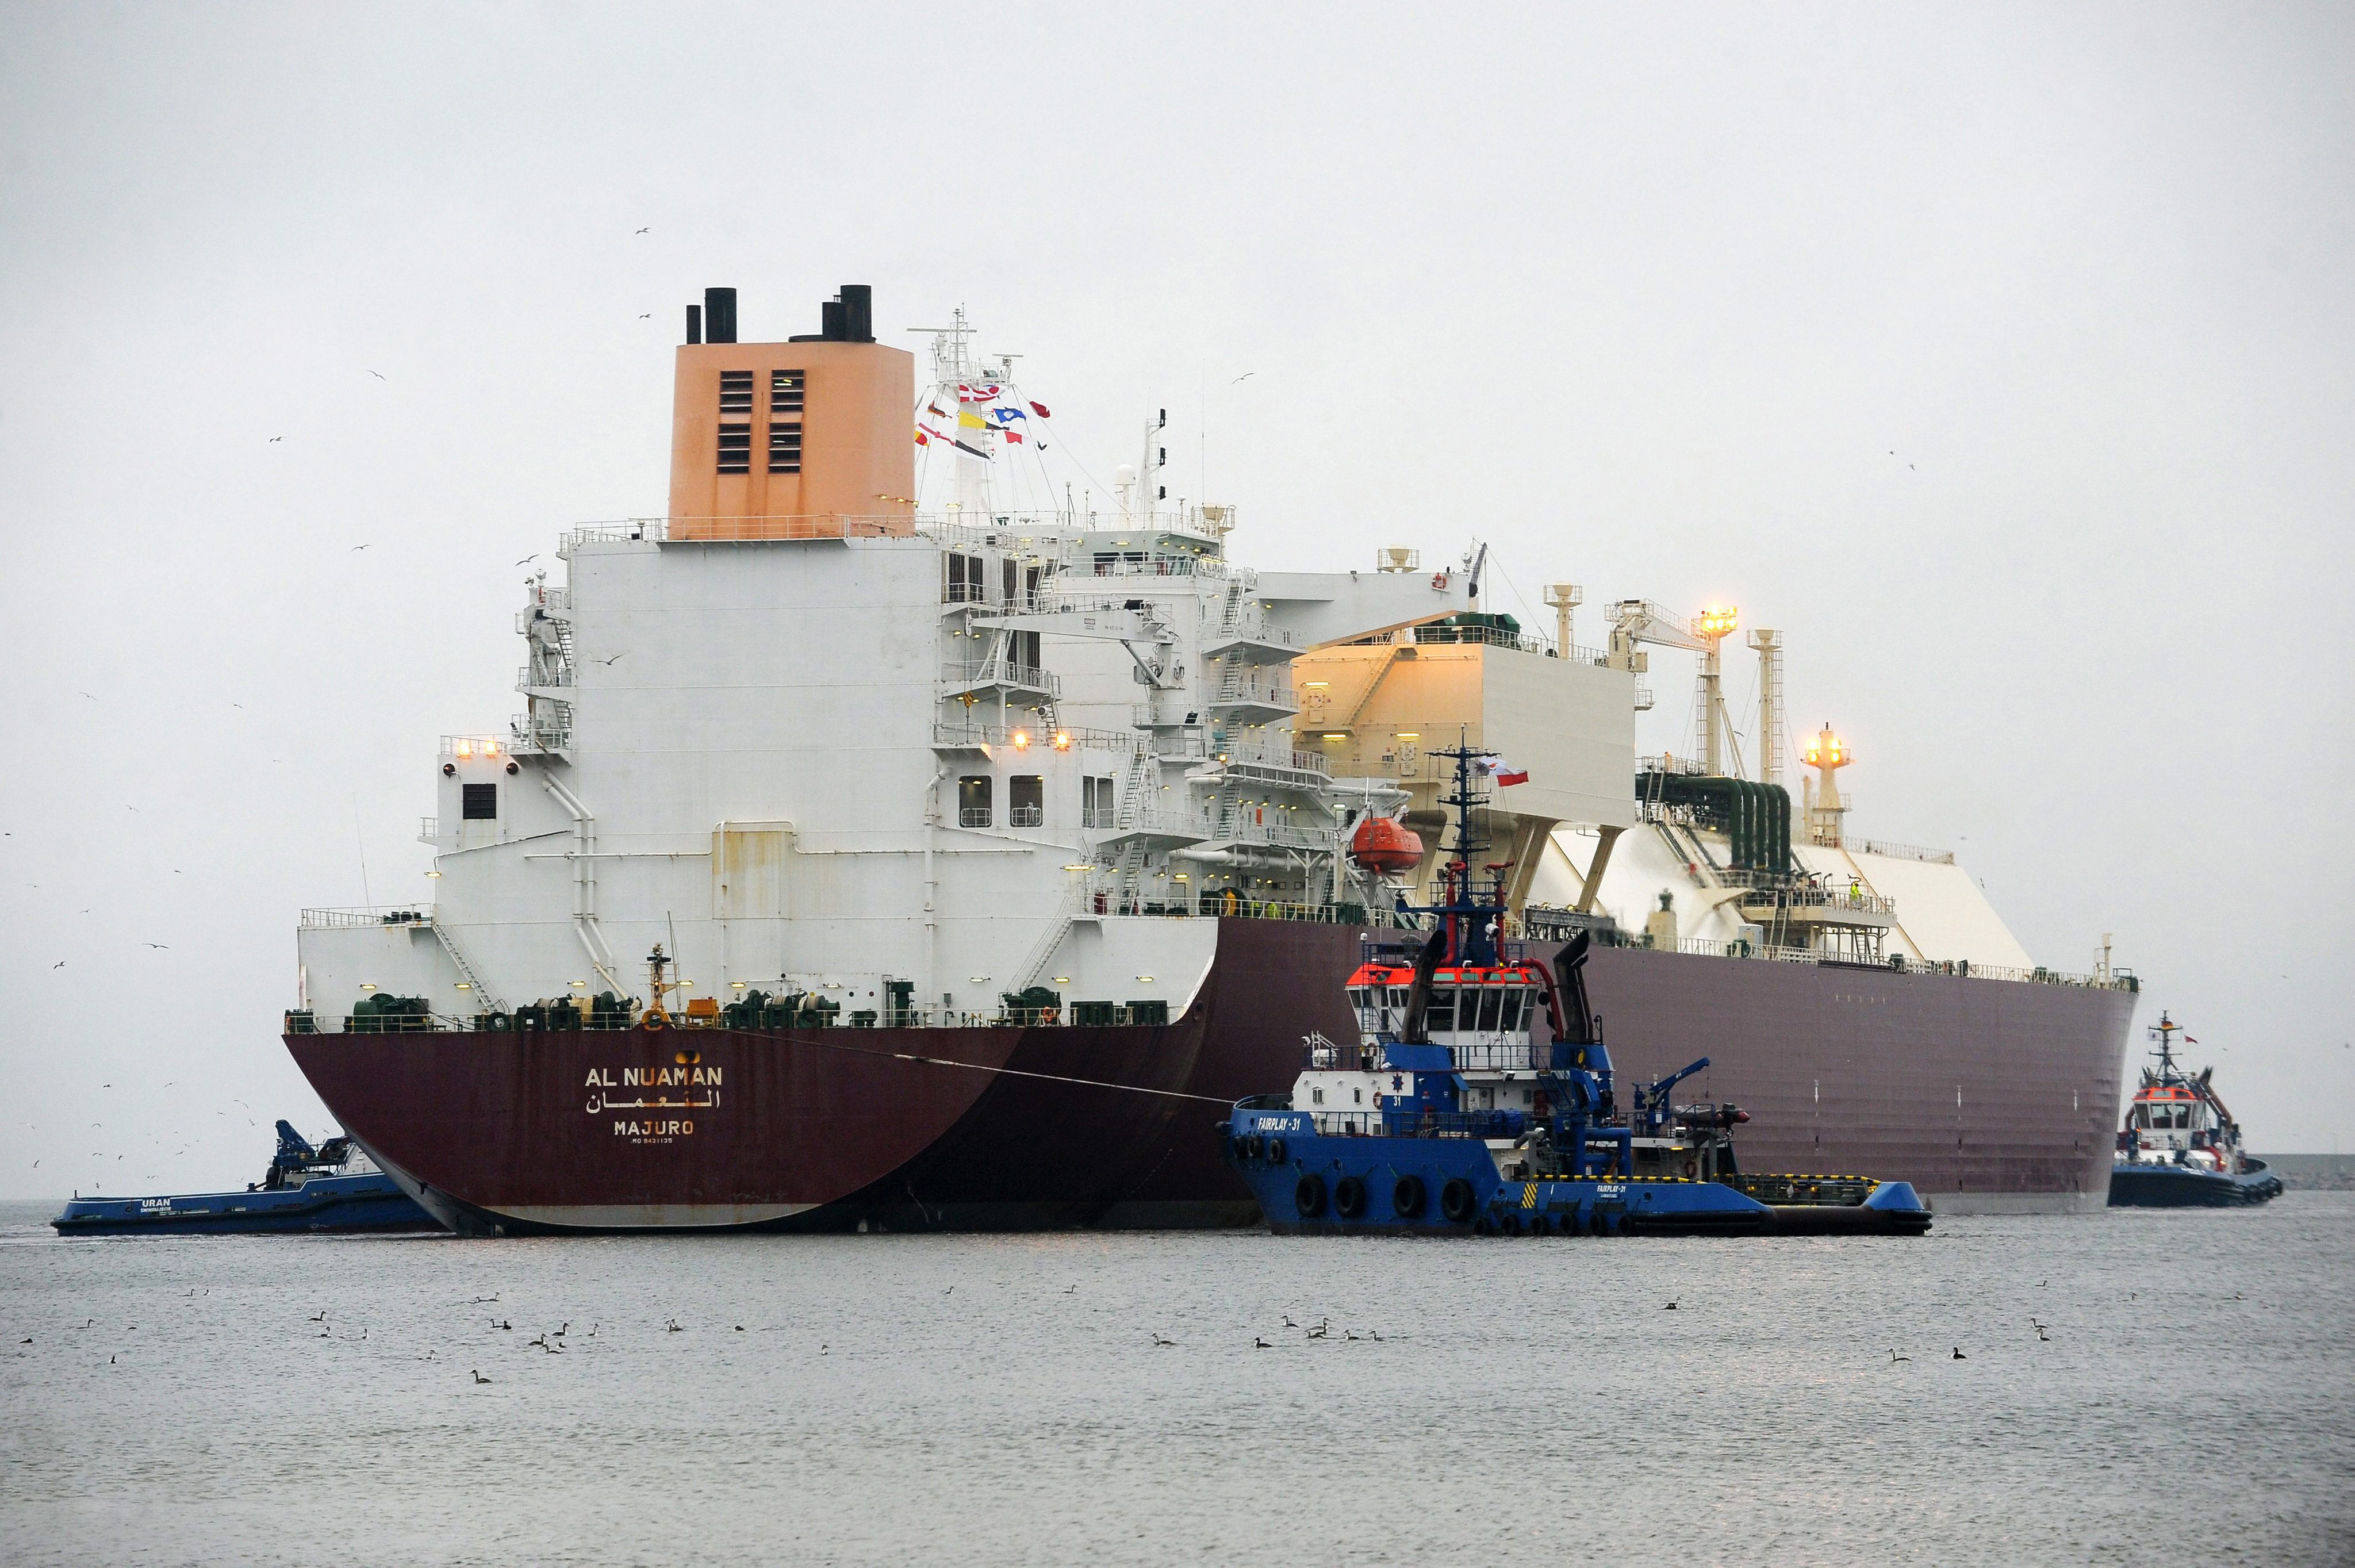 Das LNG-Tankerschiff "Al Nuaman" mit Flüssiggas aus Katar fährt in den LNG-Terminalhafen in Swinoujscie, Polen. (Aufnahme vom 11. Dezember 2015) | picture alliance / dpa